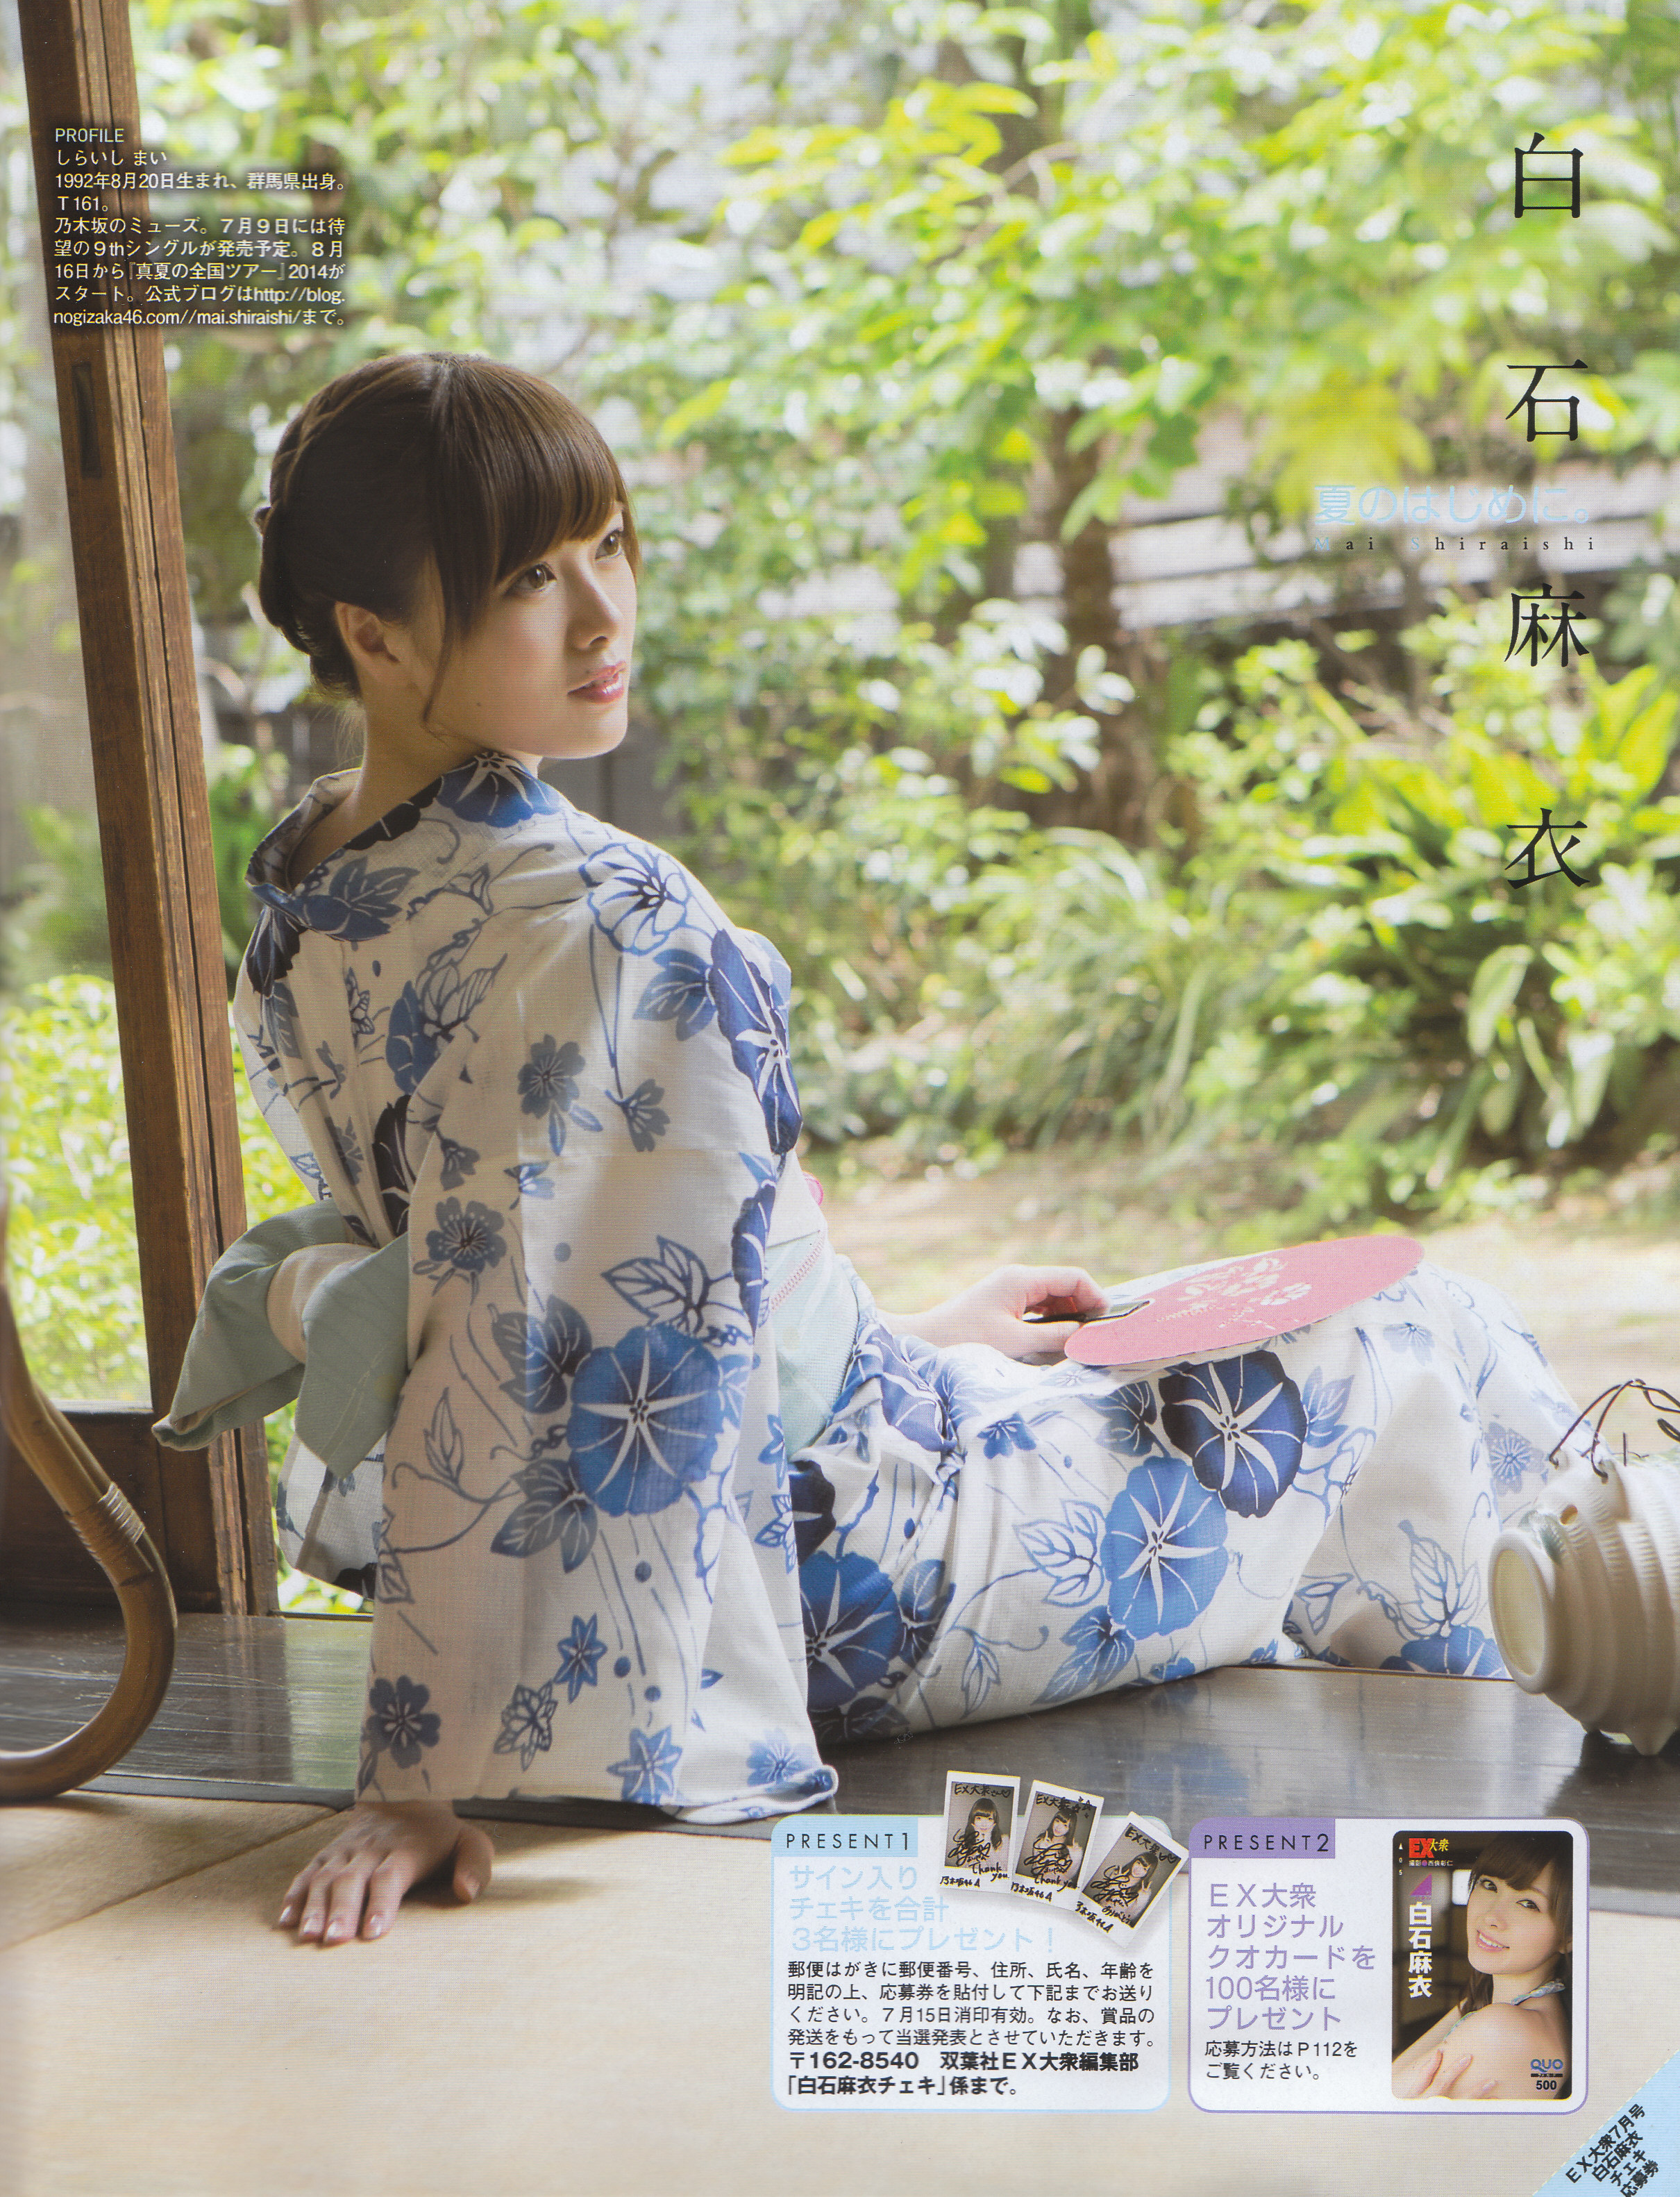 乃木坂46白石麻衣ちゃんの浴衣で夏なグラビア画像。 - AKBと坂道の画像 